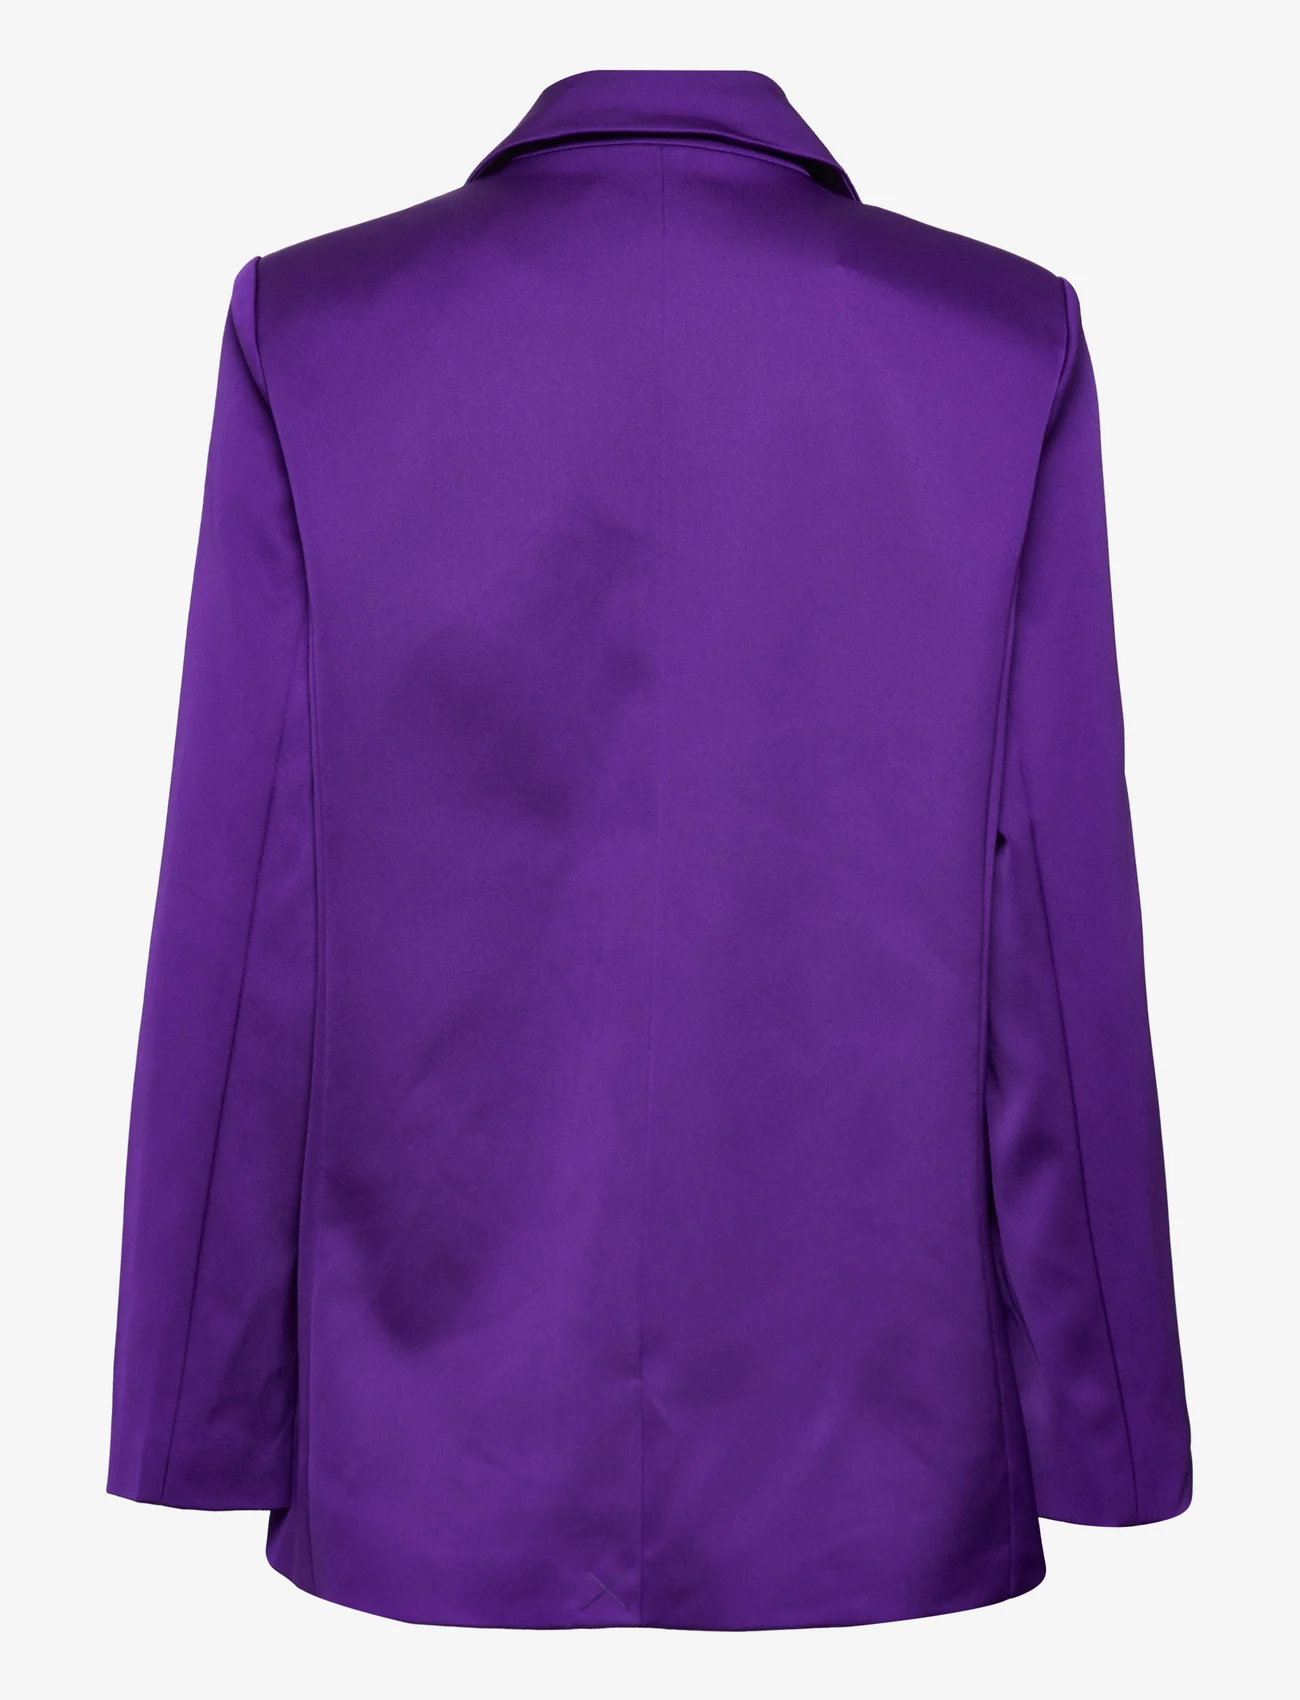 Cras - Samycras Blazer - feestelijke kleding voor outlet-prijzen - purple - 1